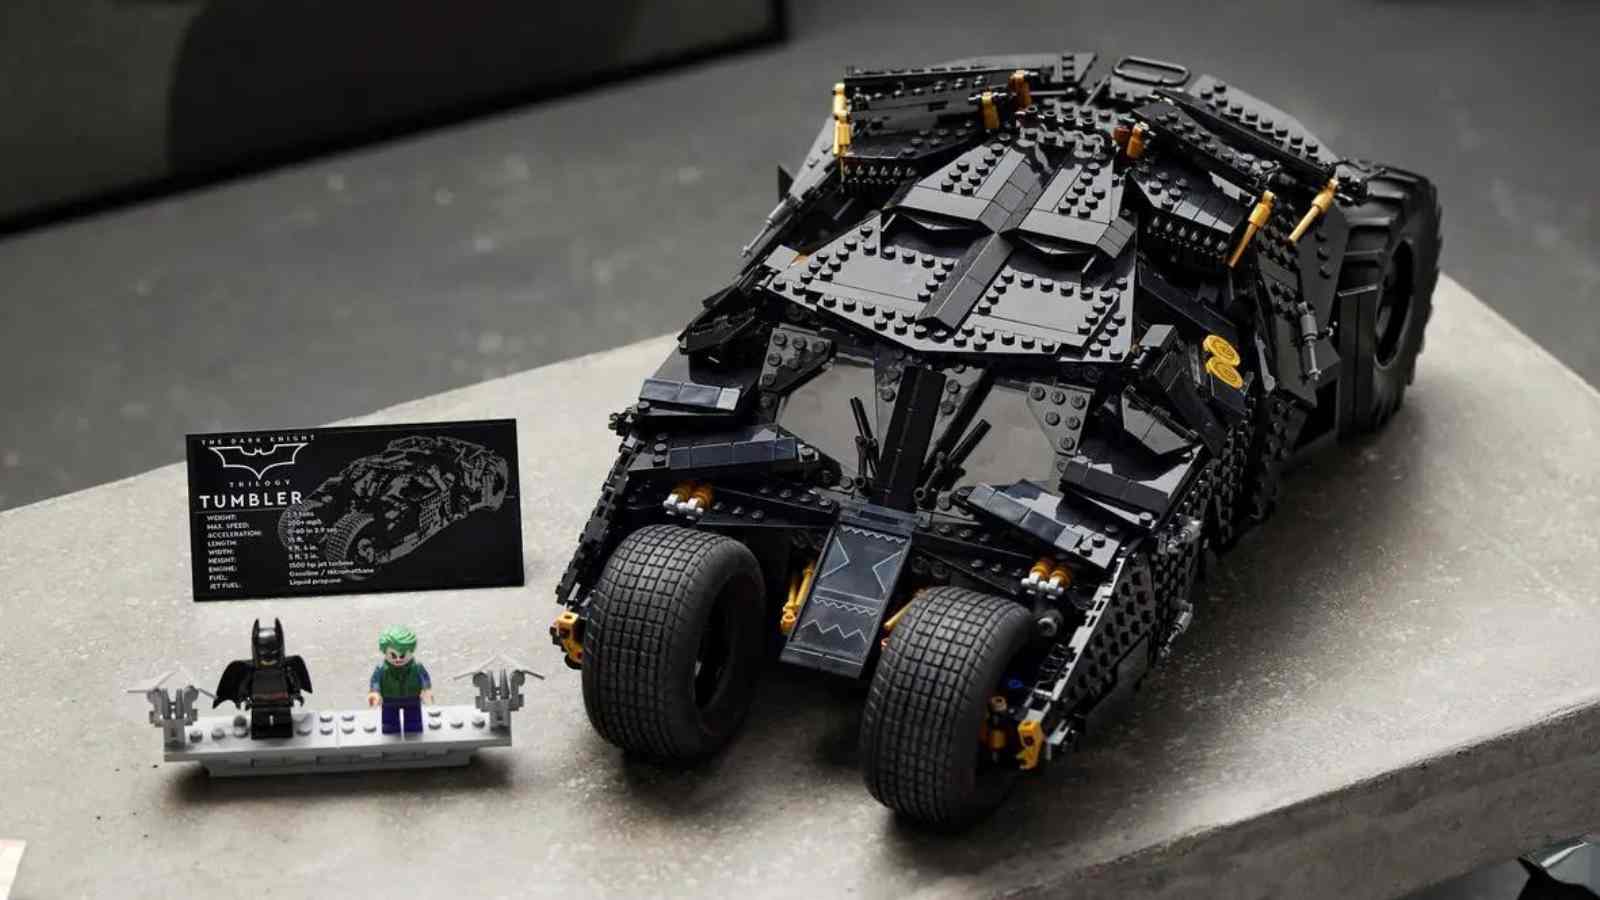 В 2024 году уйдут из эксплуатации все наборы LEGO Batman: Бэтпещера, Бэтмобиль и многое другое.